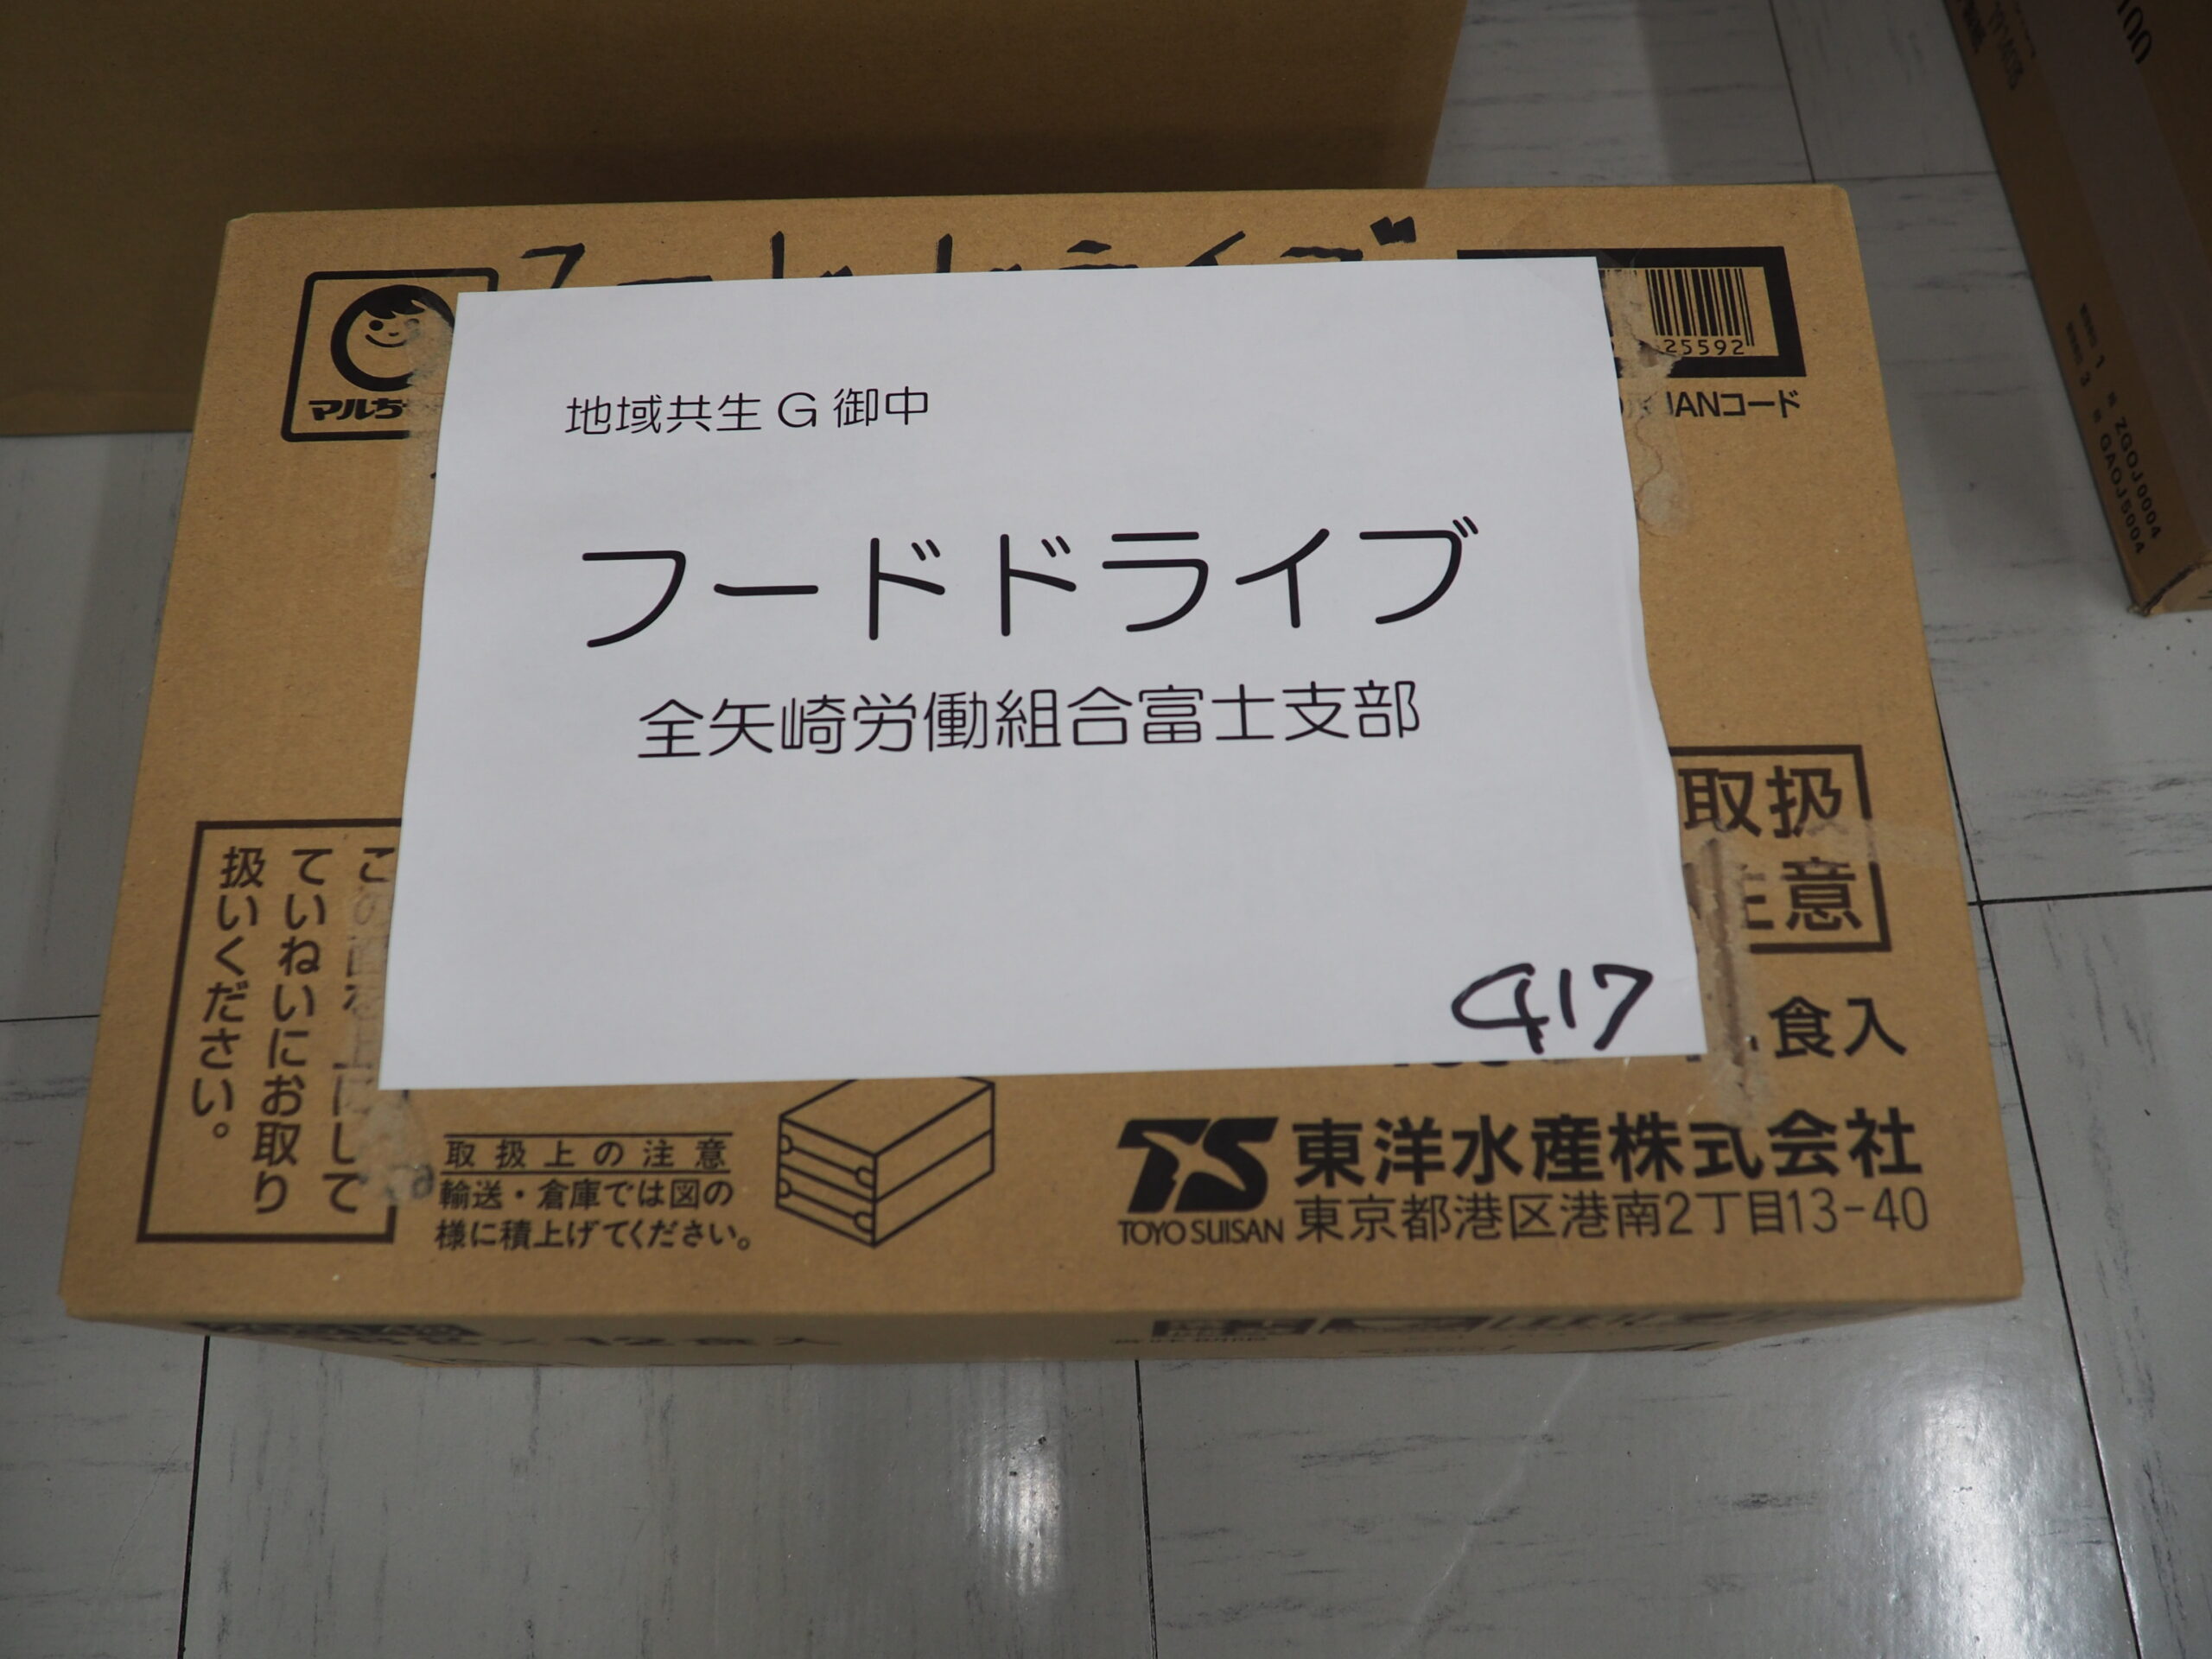 全矢崎労働組合富士支部様・浜松市役所様（冬季フードドライブ）から食品を提供いただきました。